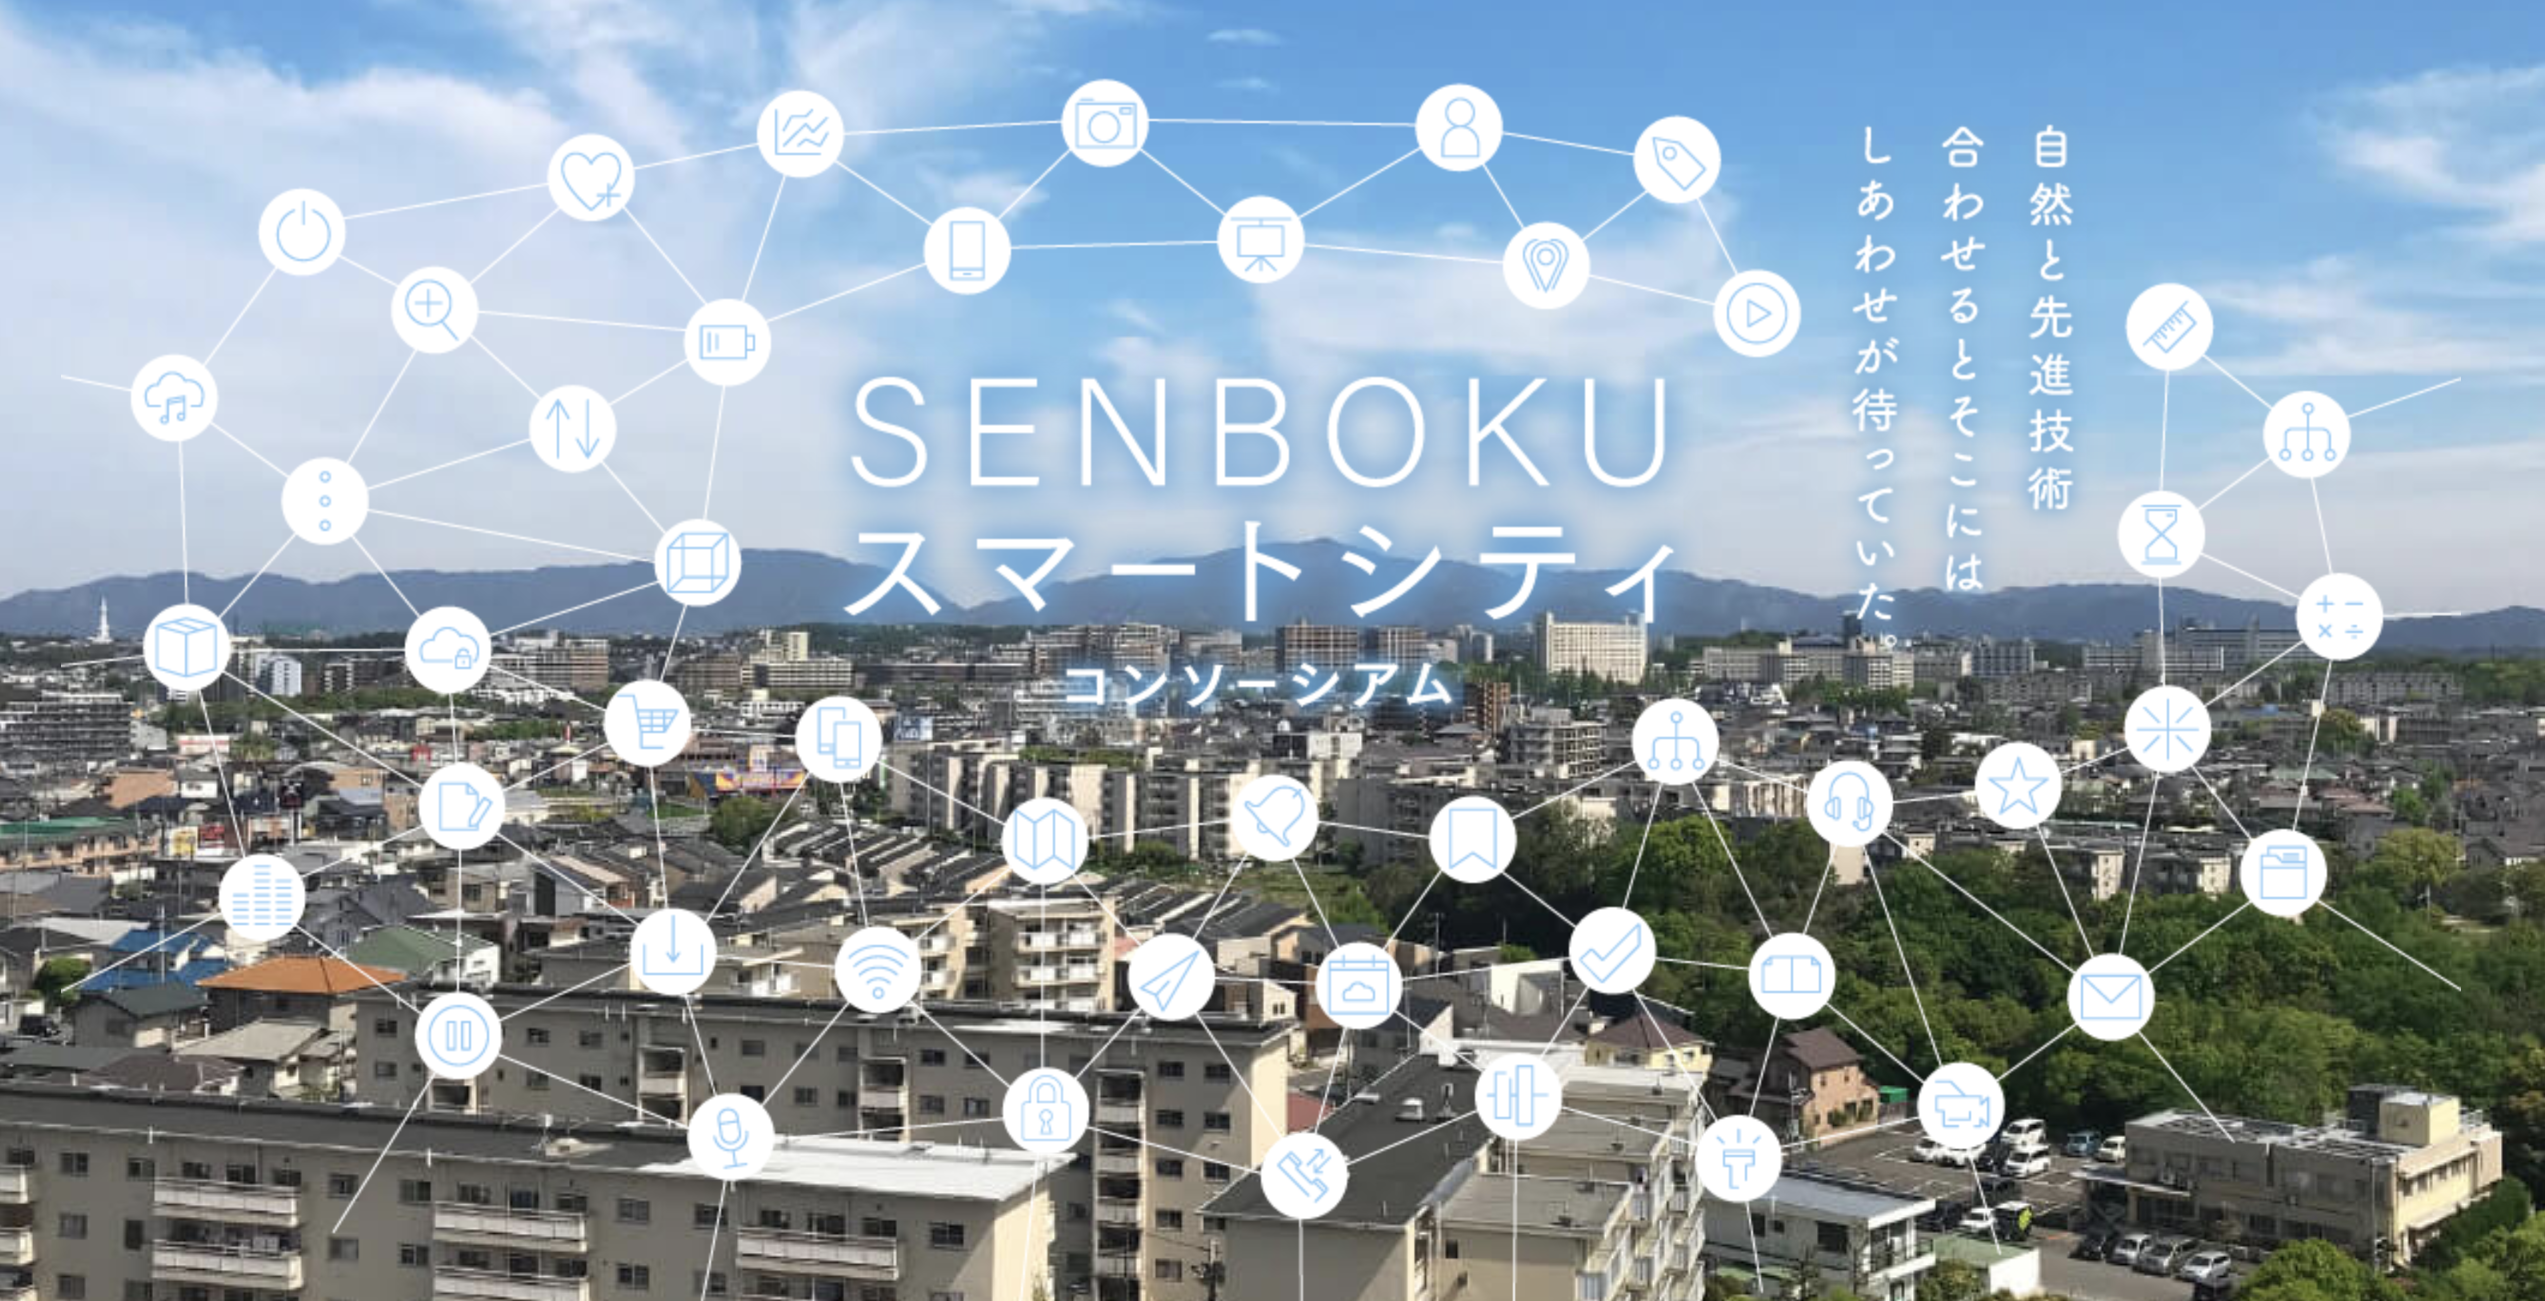 大阪府堺市において公民連携で取り組む「SENBOKU スマートシティコンソーシアム」に参画いたしました